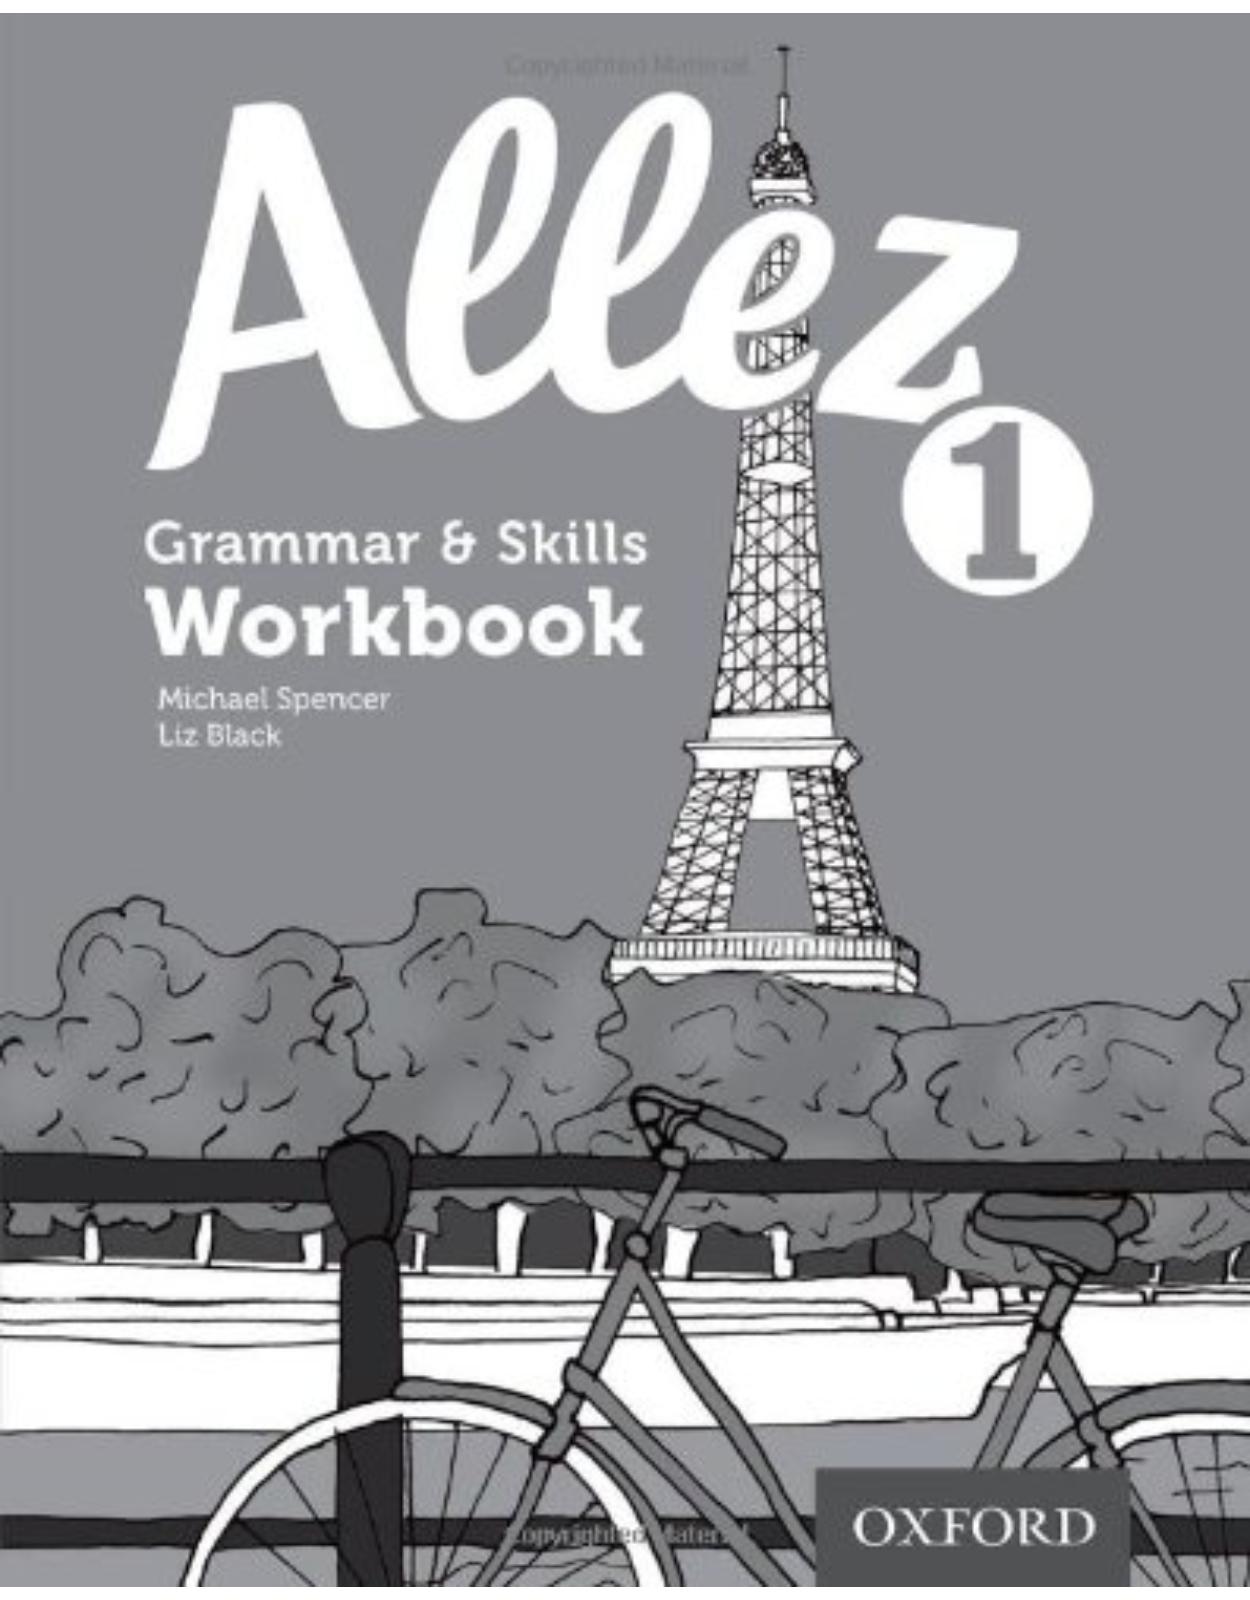 Allez: Grammar & Skills Workbook 1 (8 pack)